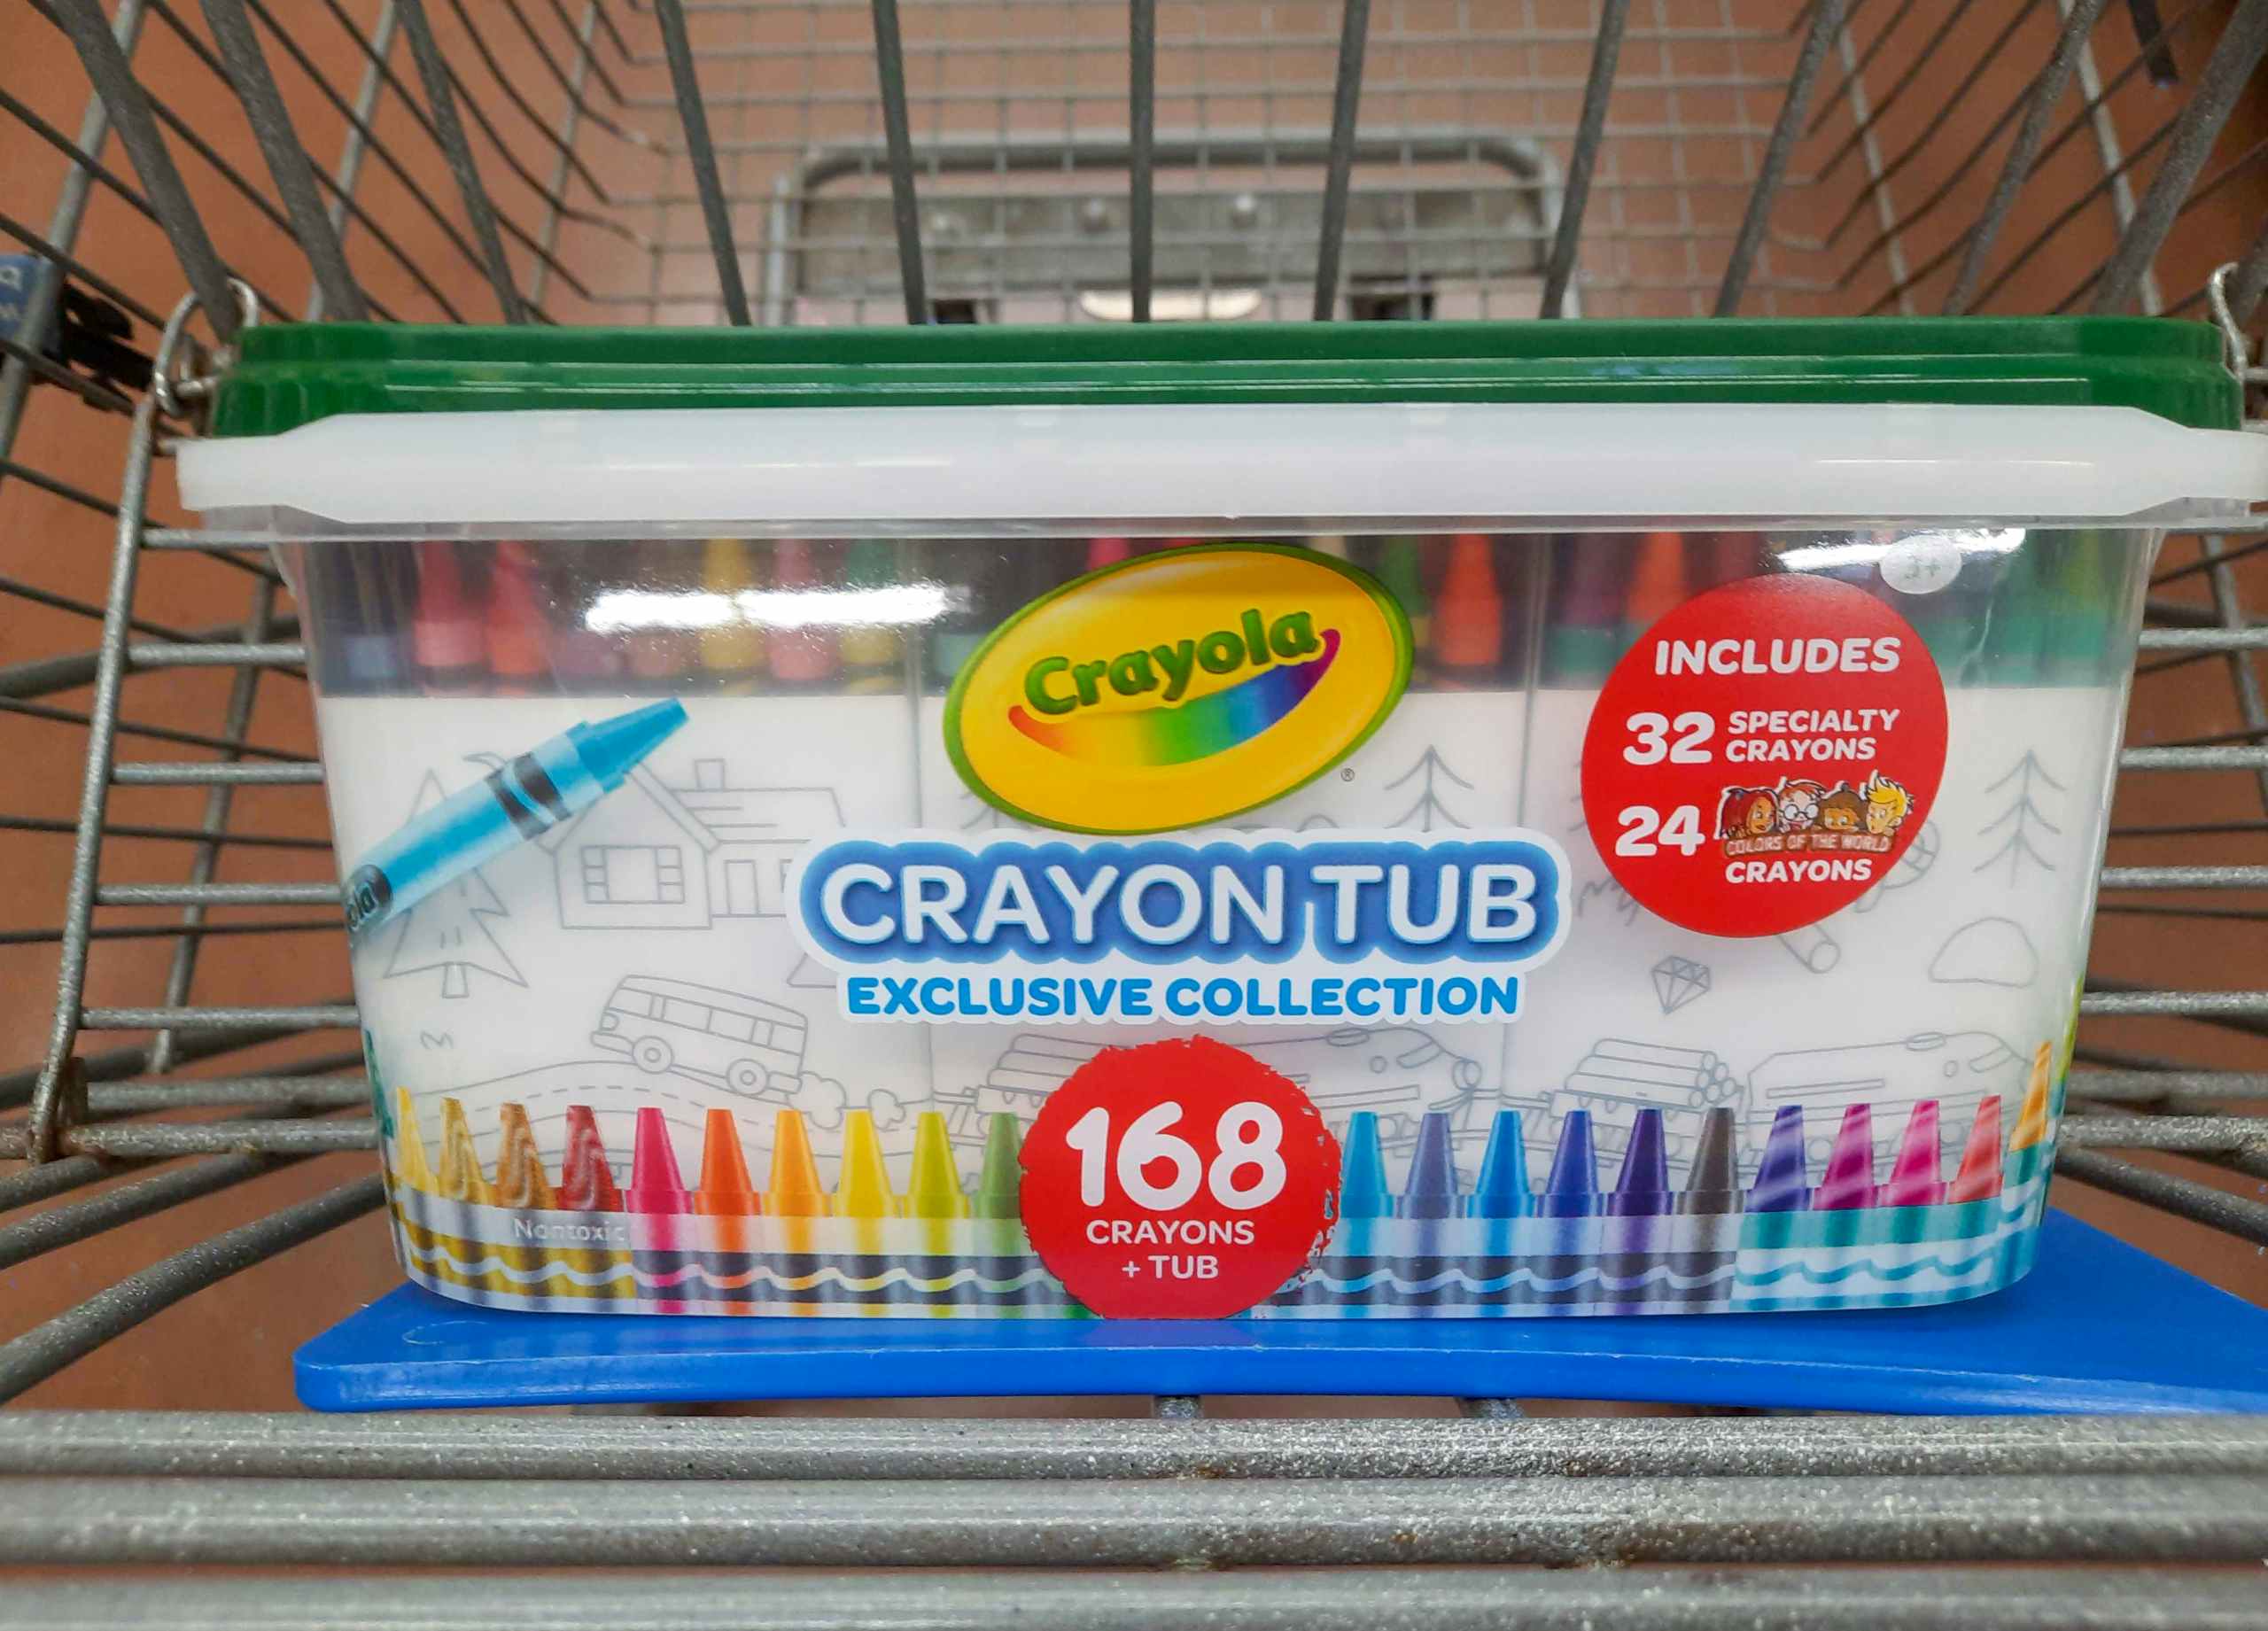 Crayola Crayon Tub at Walmart